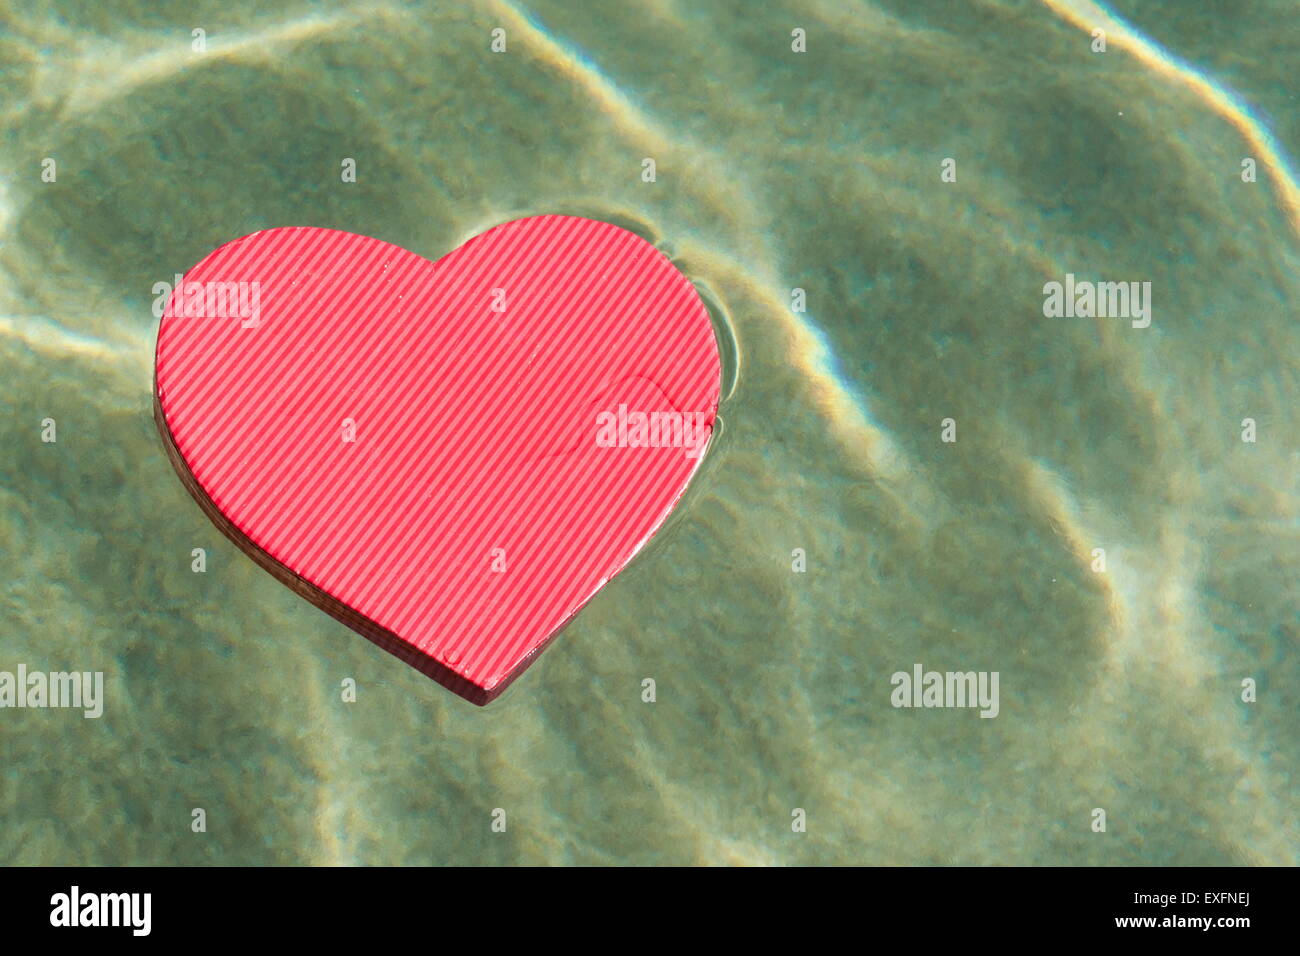 En forme de coeur rouge présent fort flottant à la surface de la mer Banque D'Images